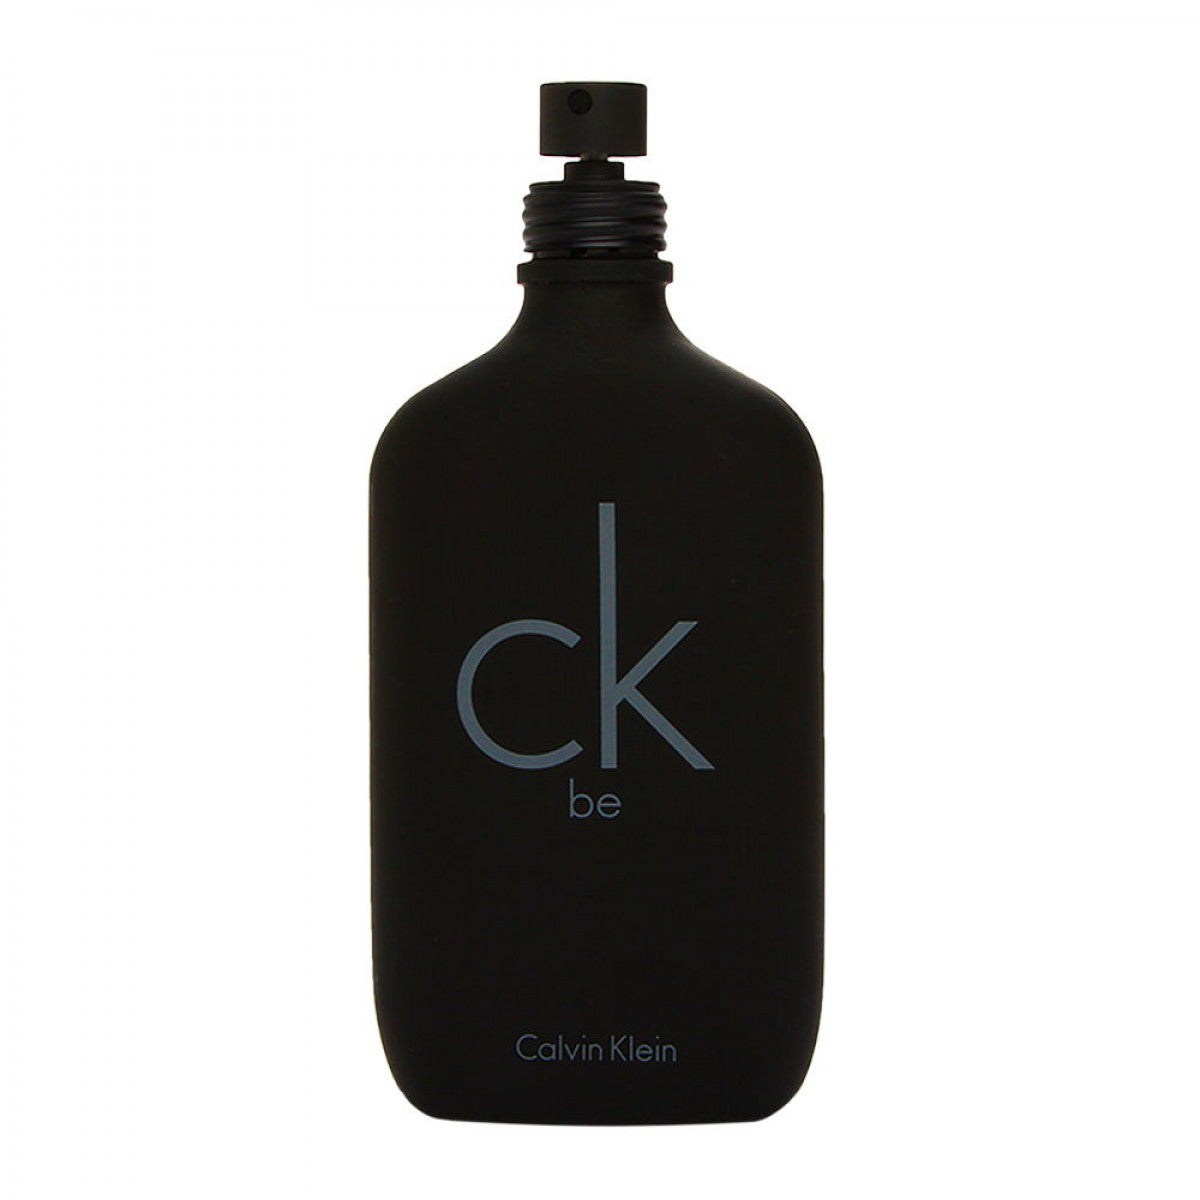 Calvin Klein CK Be Eau De Toilette 200 ml Tester - RossoLaccaStore